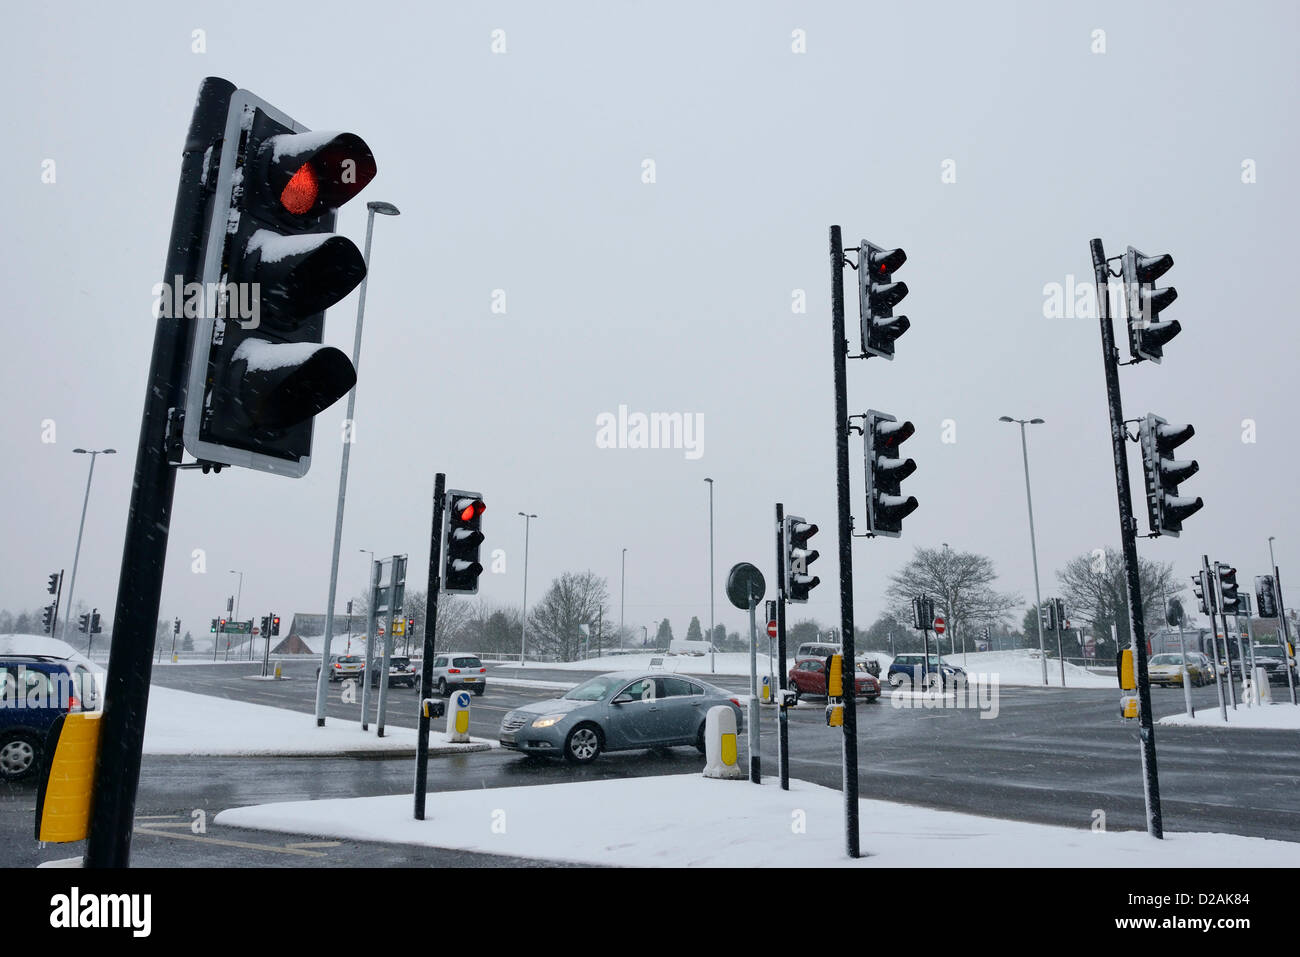 Chester Regno Unito. 18 gennaio, 2013. Il traffico negozia un importante nodo stradale in presenza di neve condizioni atmosferiche. Foto Stock